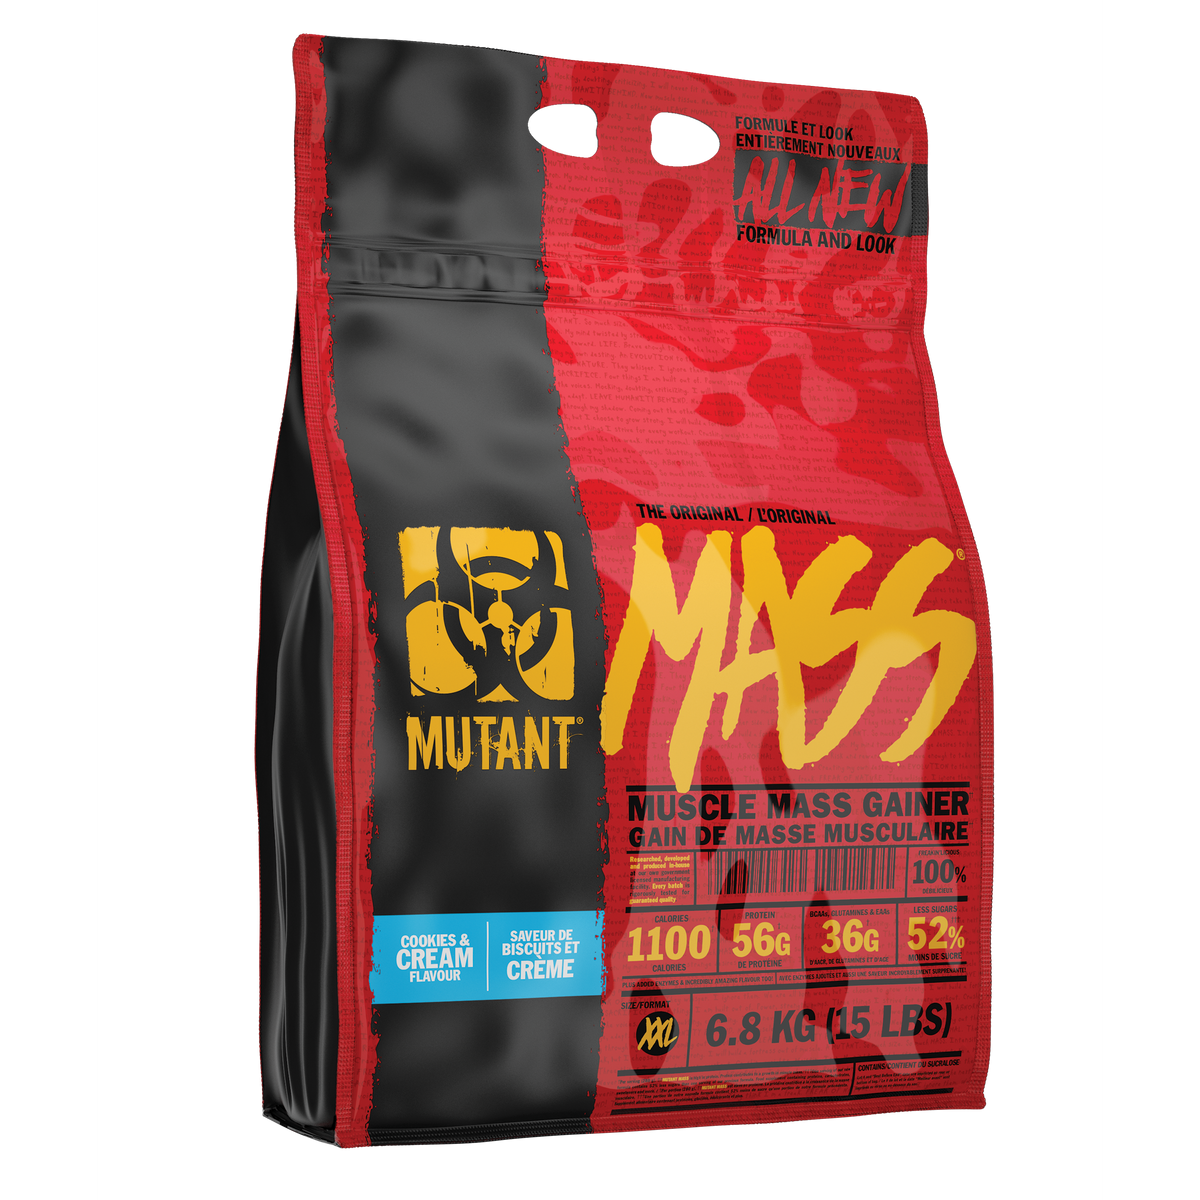 Mutant Mass - Muscle Mass Gainer